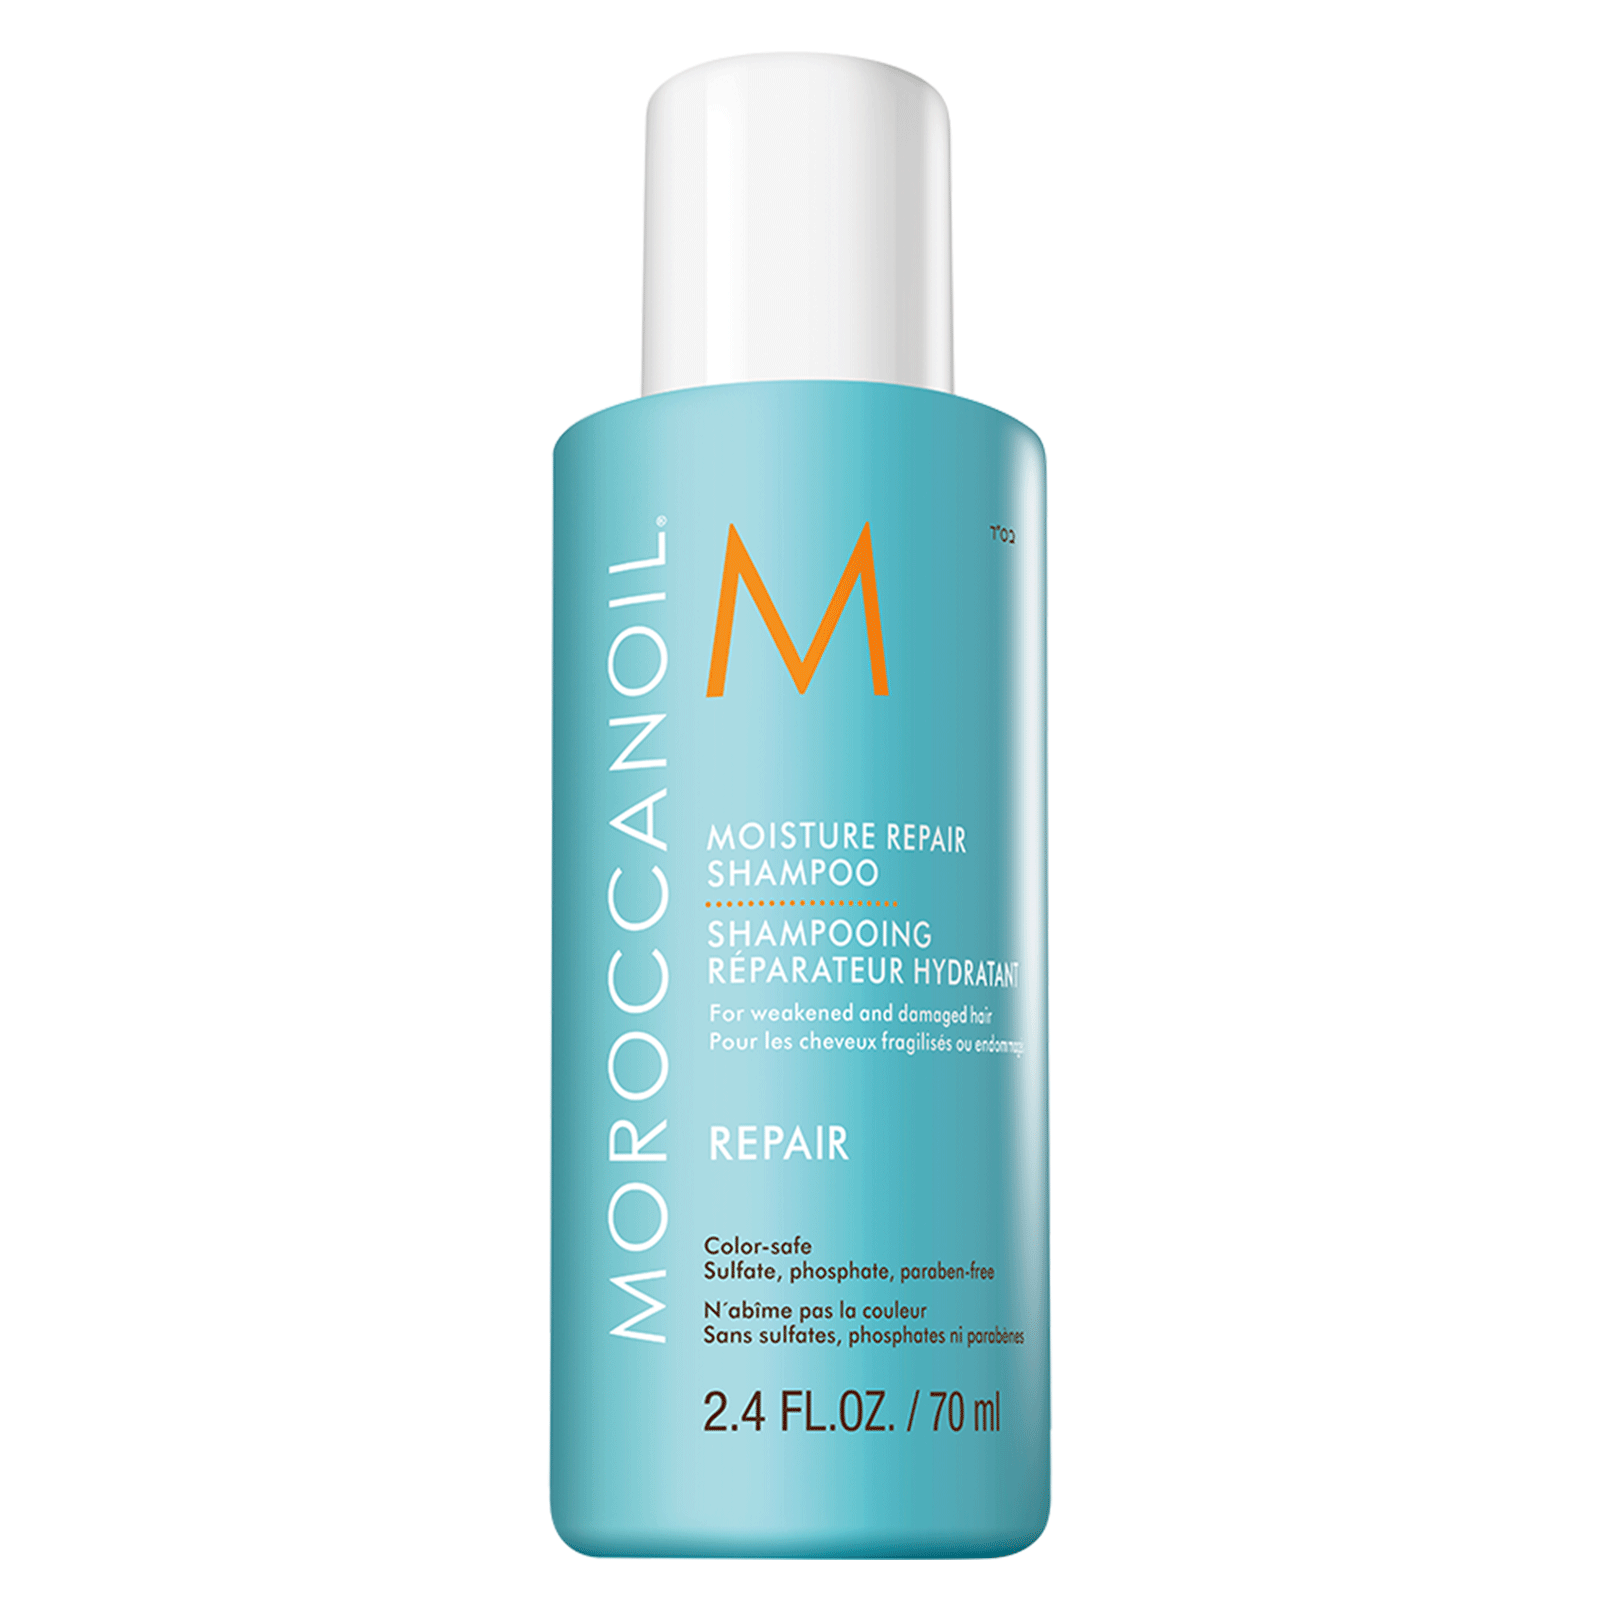 Integrere det er smukt Mose Moisture Repair Shampoo - Moroccanoil | CosmoProf